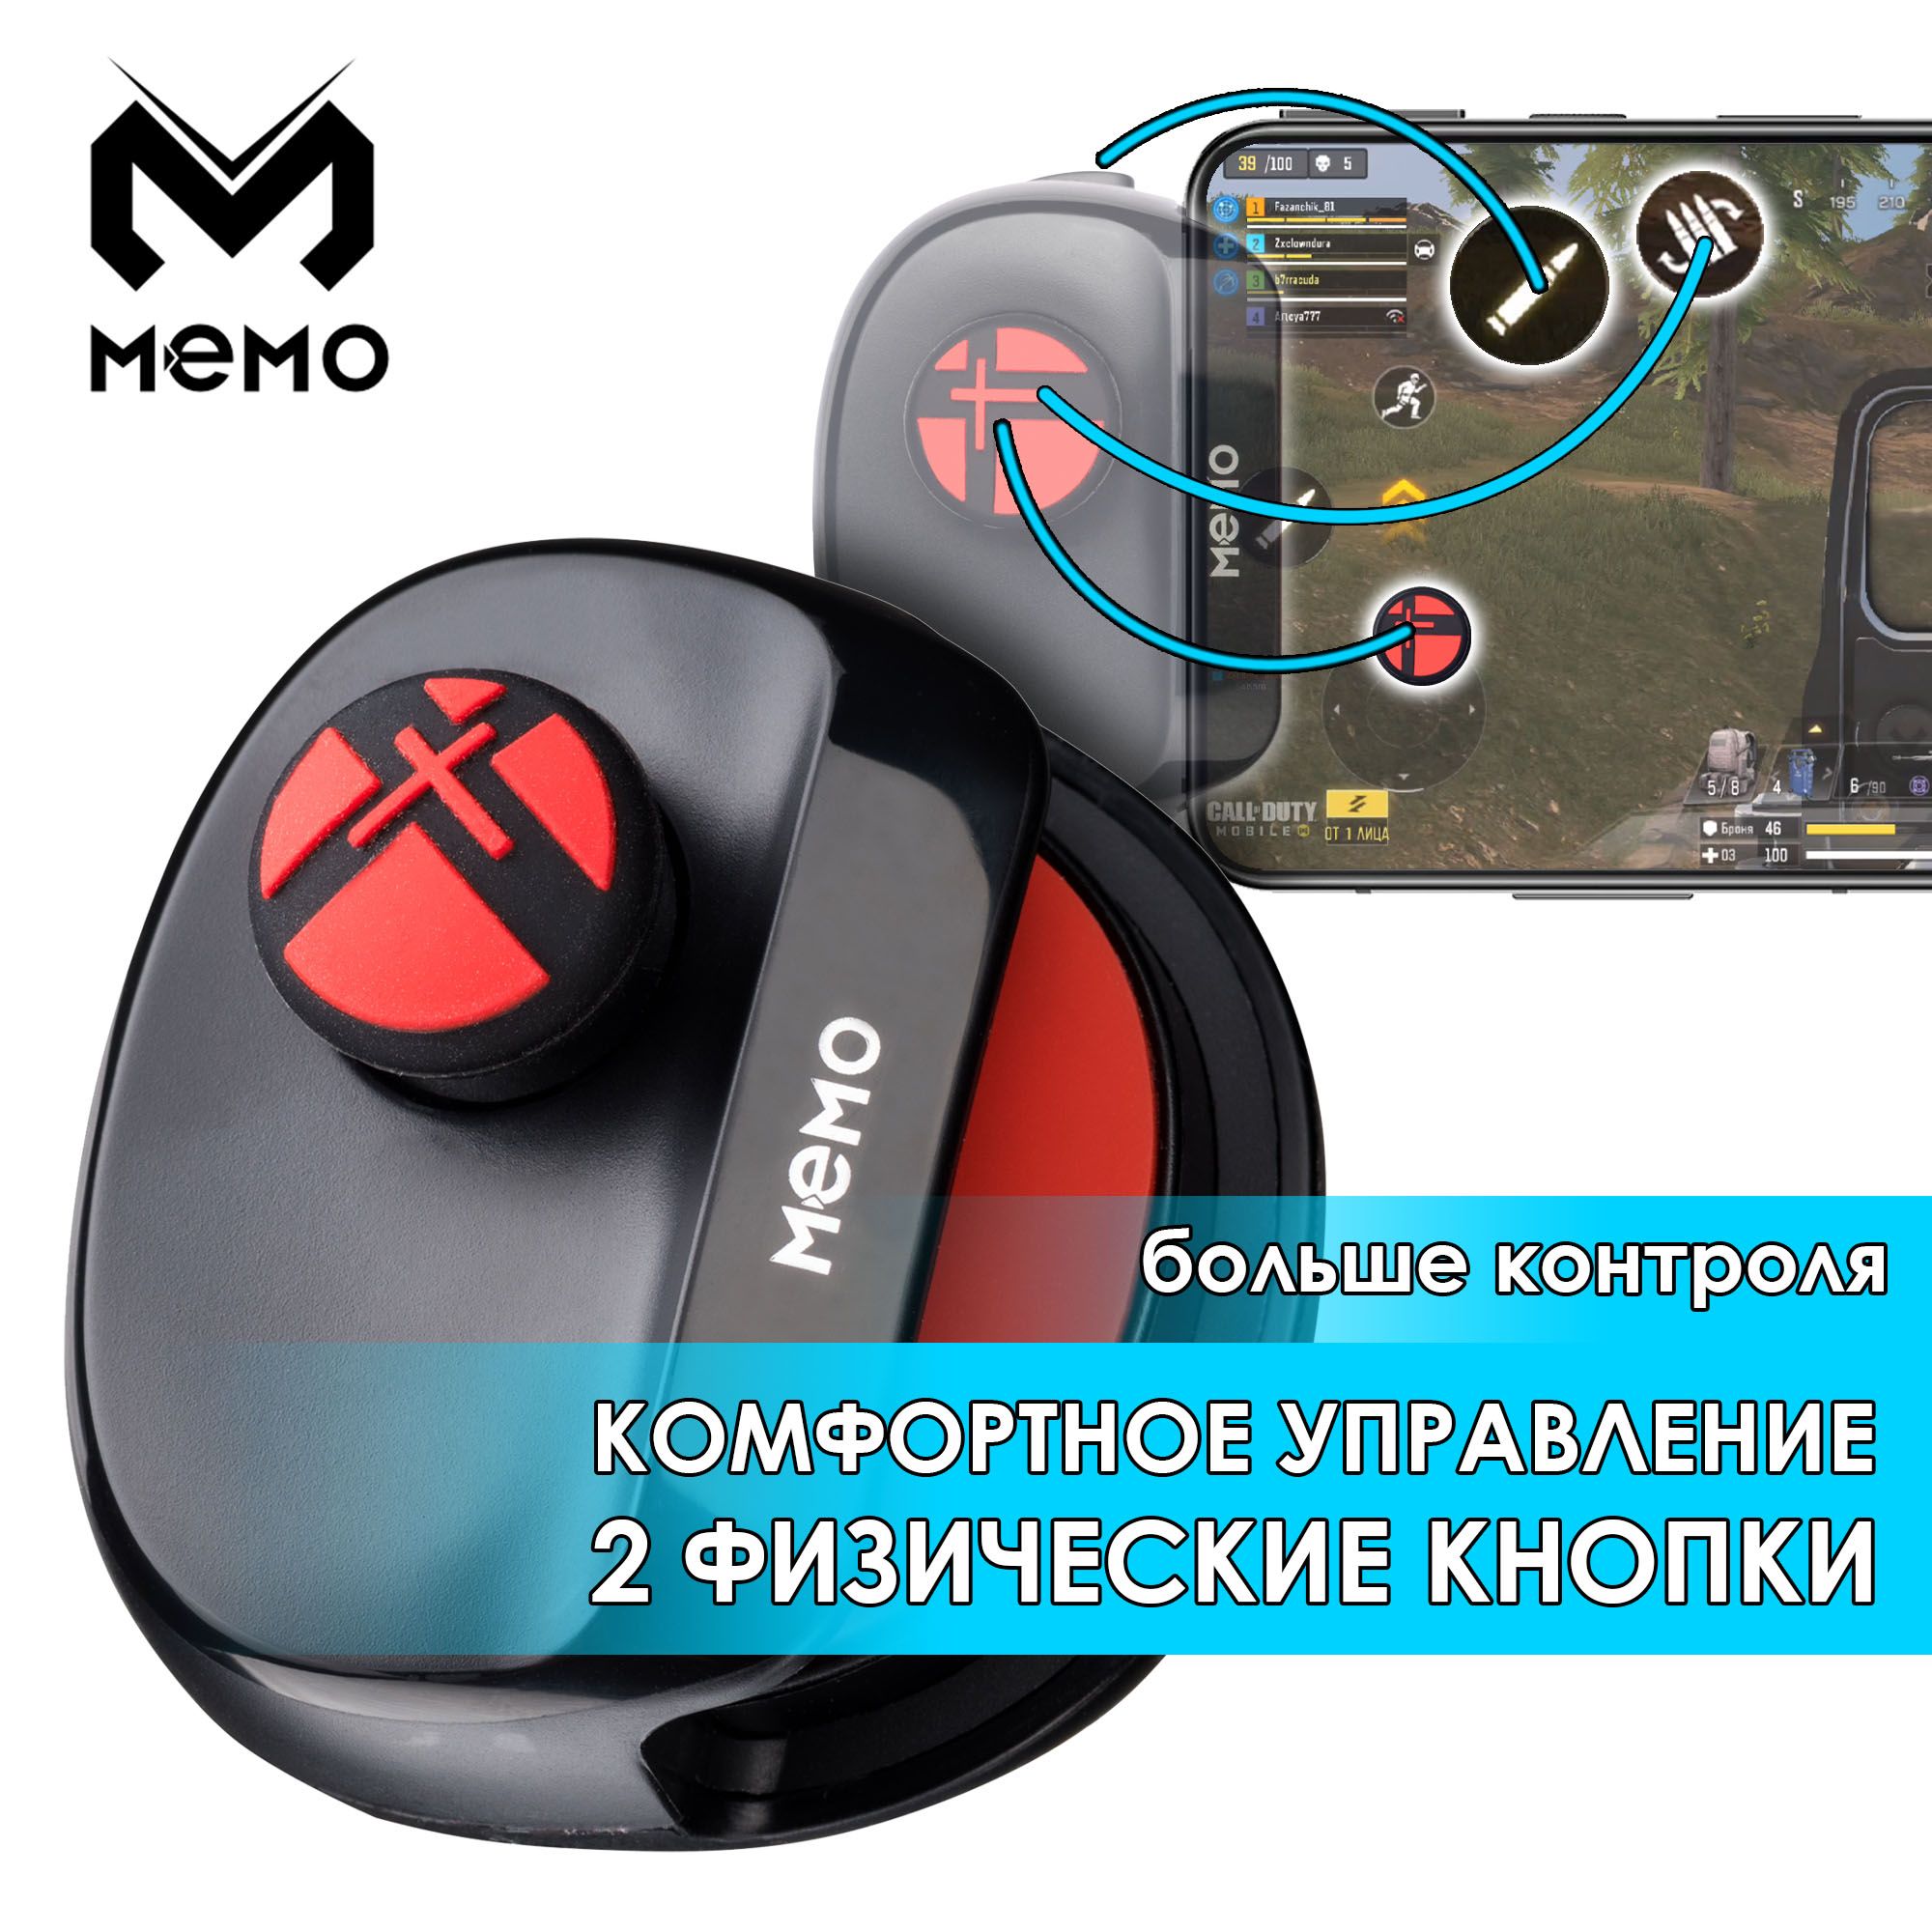 MEMOMB-01одноручныйджойстикдлятелефона(Type-C)(Android)беспроводнойгеймпаддлятелефонапланшета